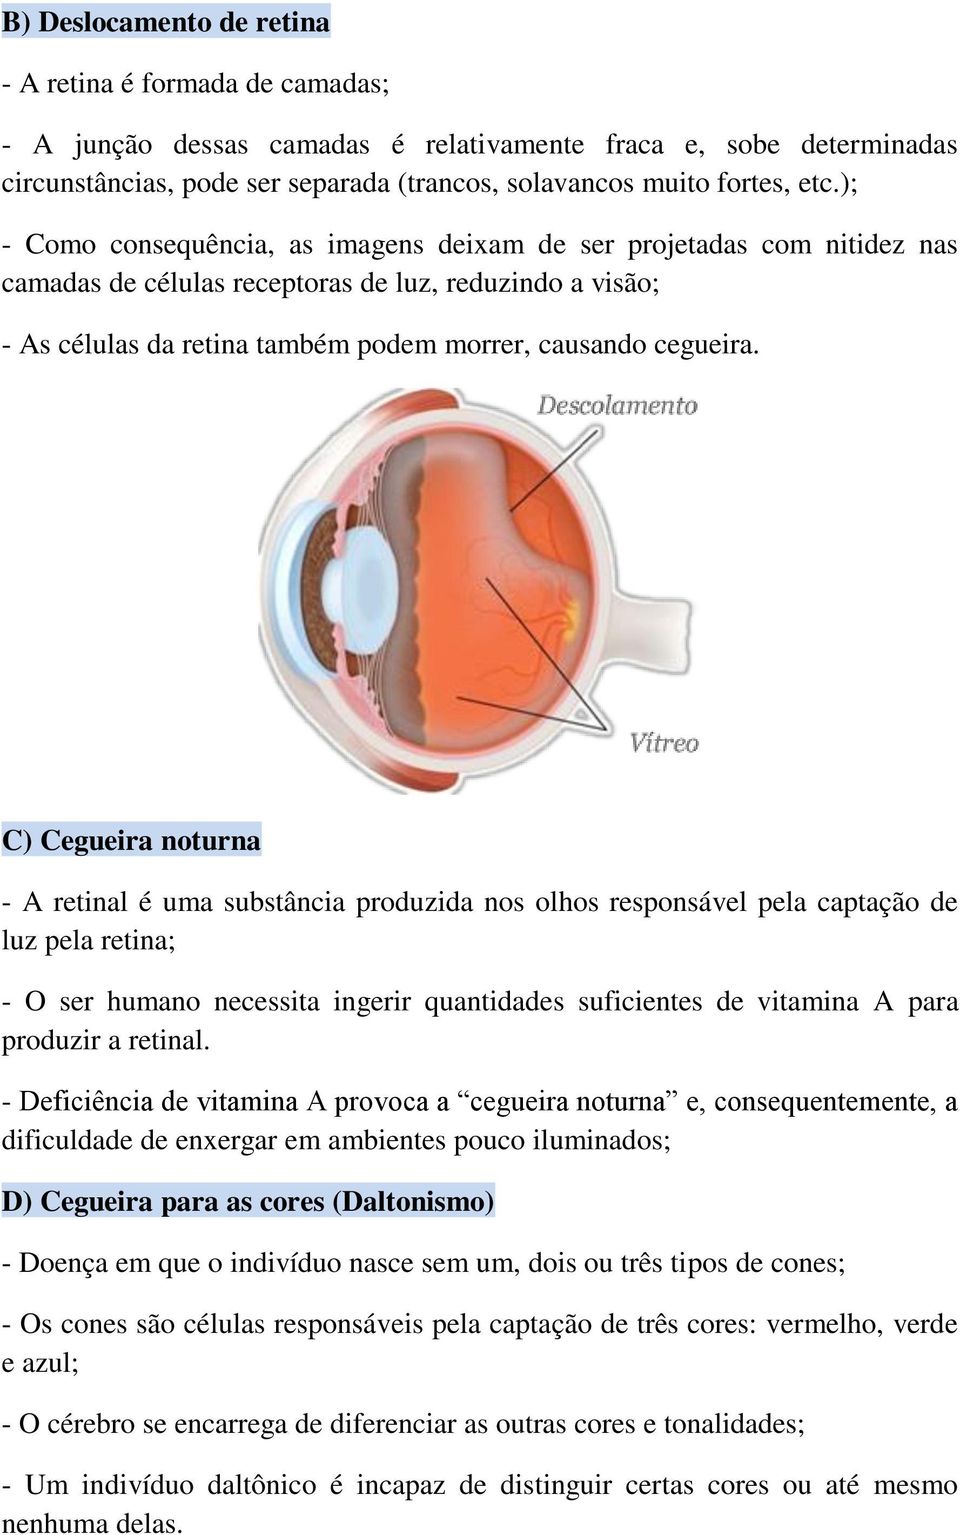 C) Cegueira noturna - A retinal é uma substância produzida nos olhos responsável pela captação de luz pela retina; - O ser humano necessita ingerir quantidades suficientes de vitamina A para produzir